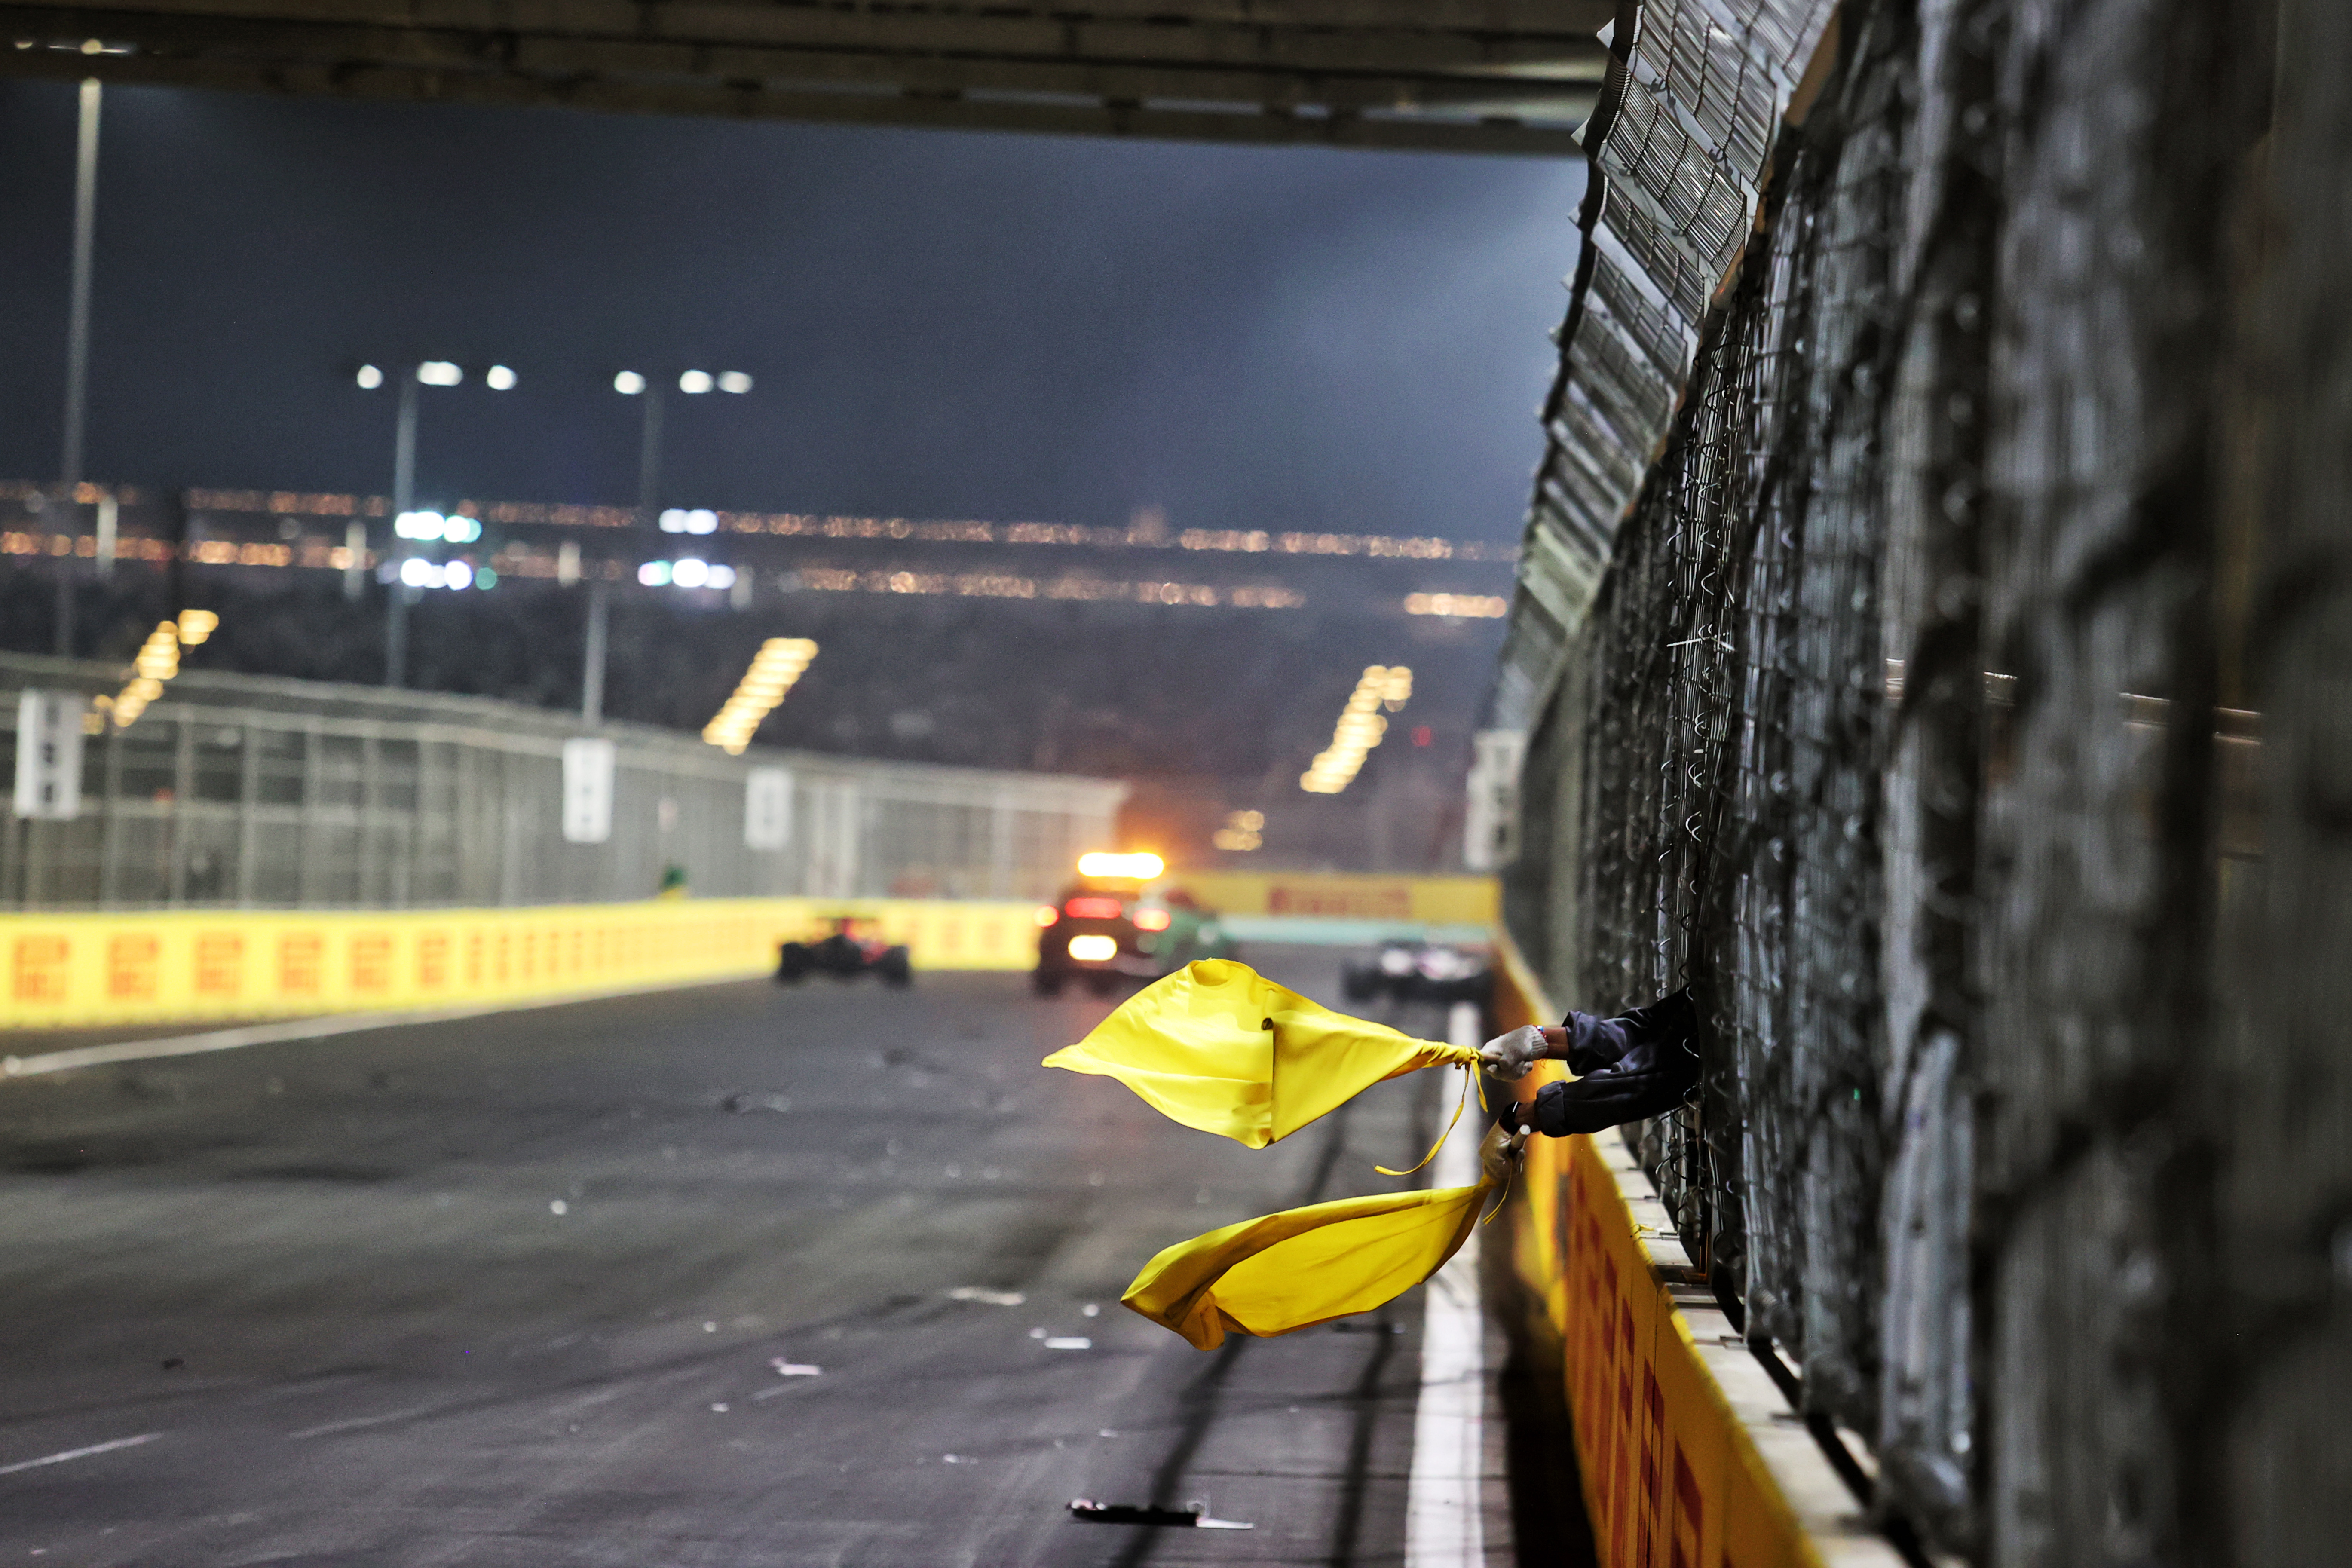 Motor Racing Formula One World Championship Saudi Arabian Grand Prix Race Day Jeddah, Saudi Arabia